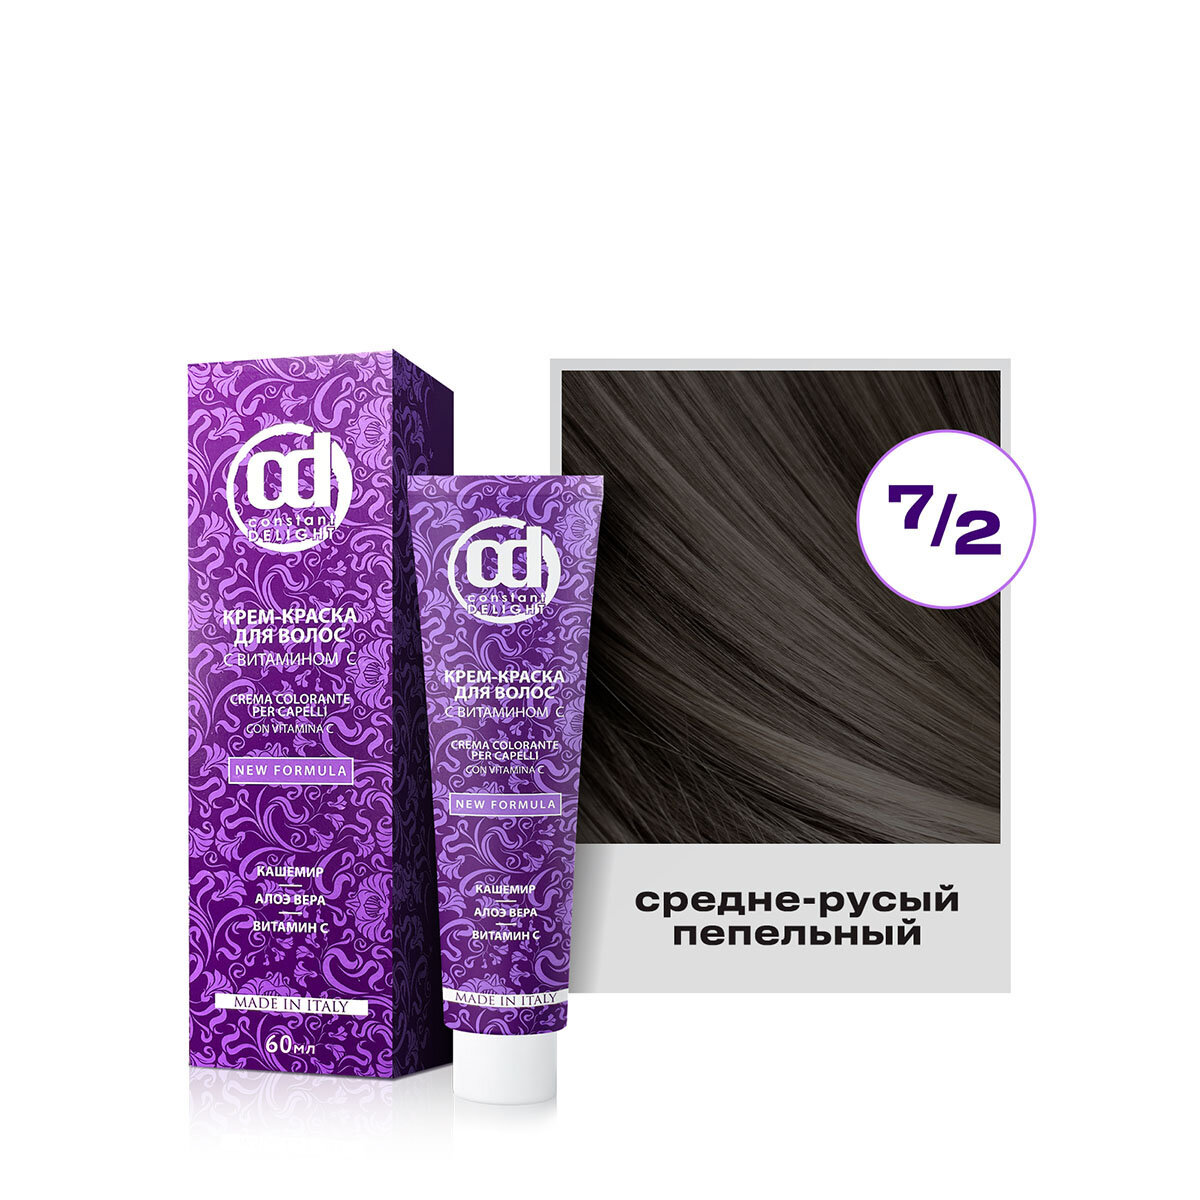 Крем-краска для окрашивания волос CONSTANT DELIGHT 7/2 средне-русый пепельный с витамином С 60 мл